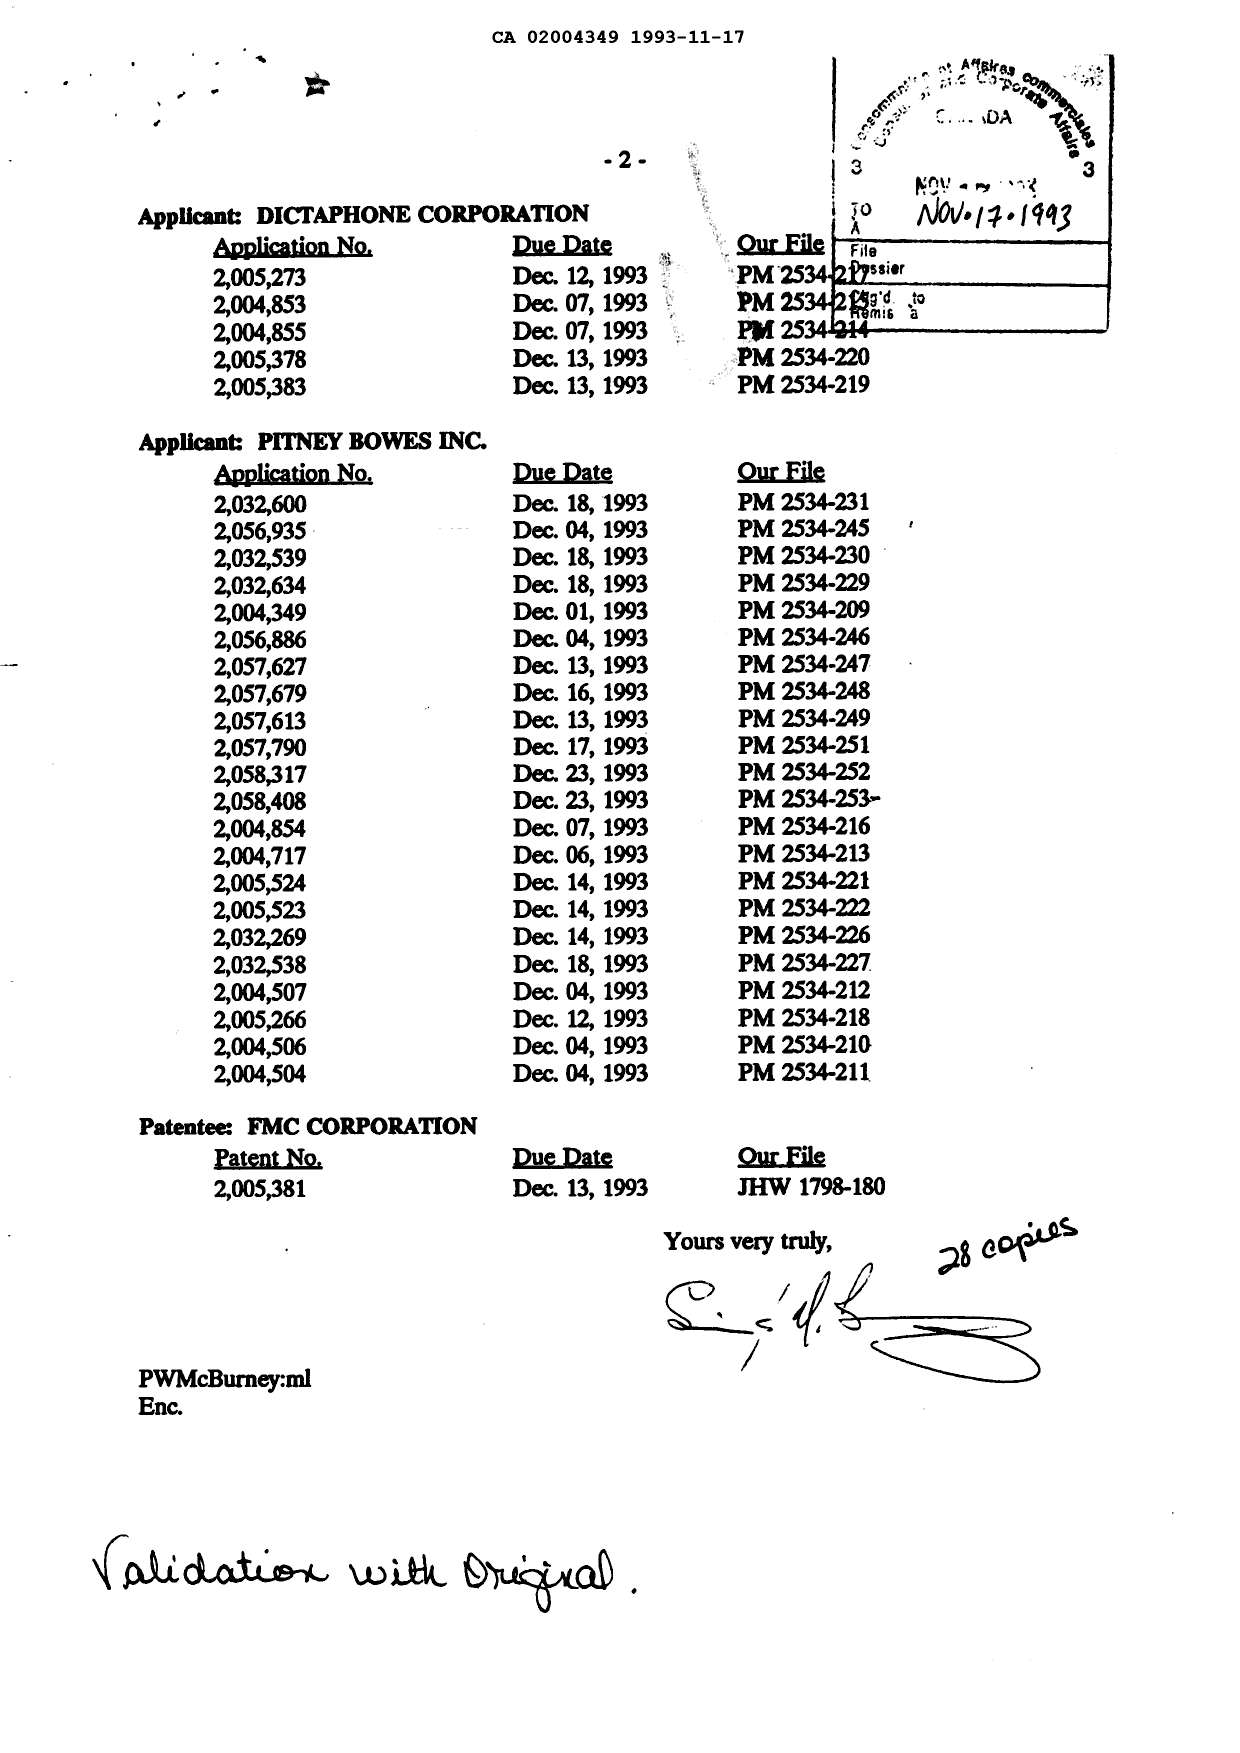 Document de brevet canadien 2004349. Taxes 19931117. Image 1 de 1